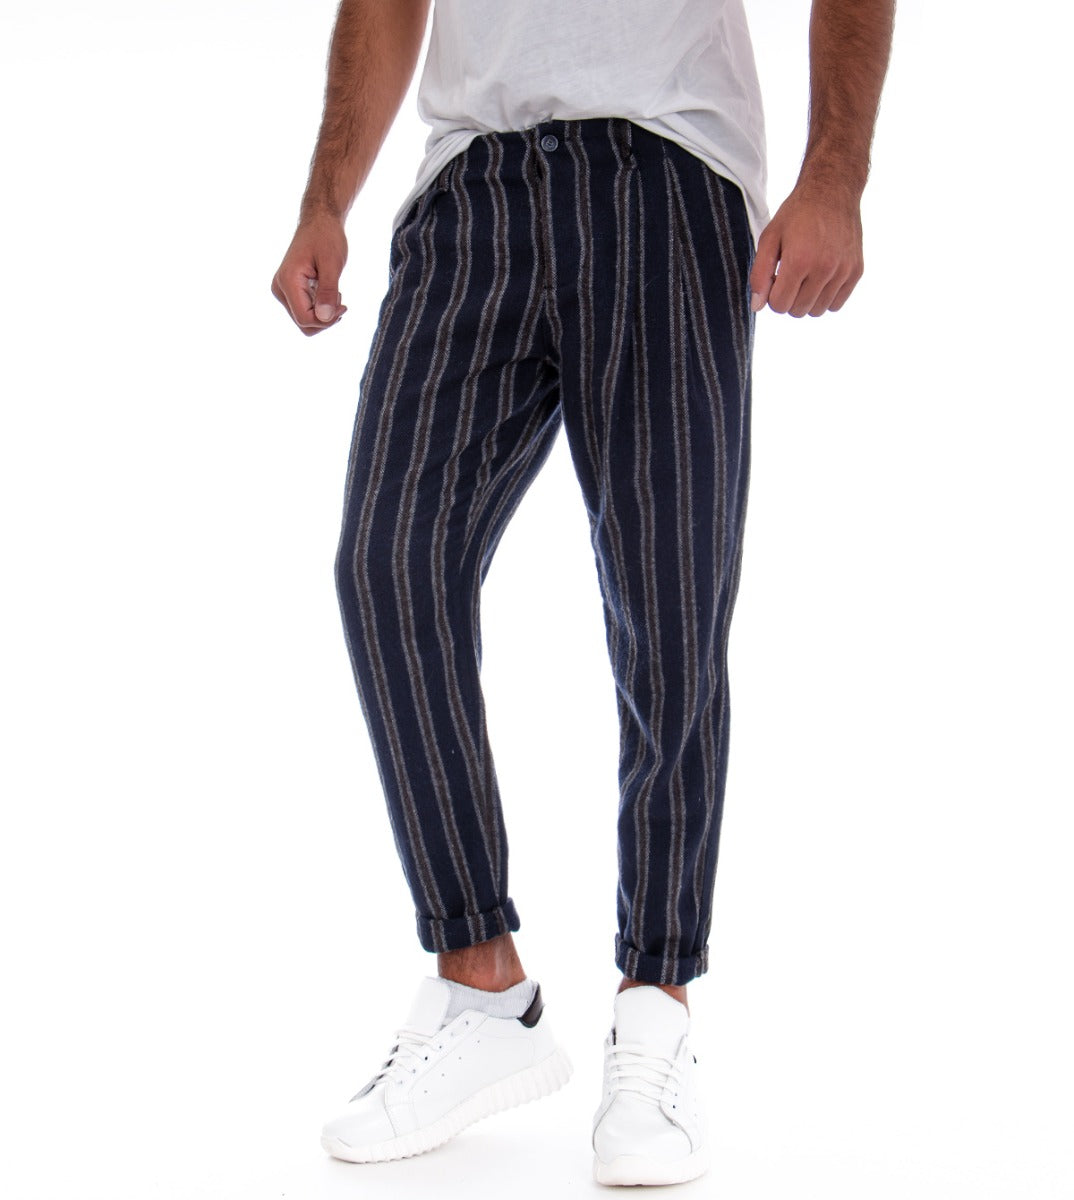 Pantaloni Uomo Tasca America Blu Righe Rigato GIOSAL-P1830A